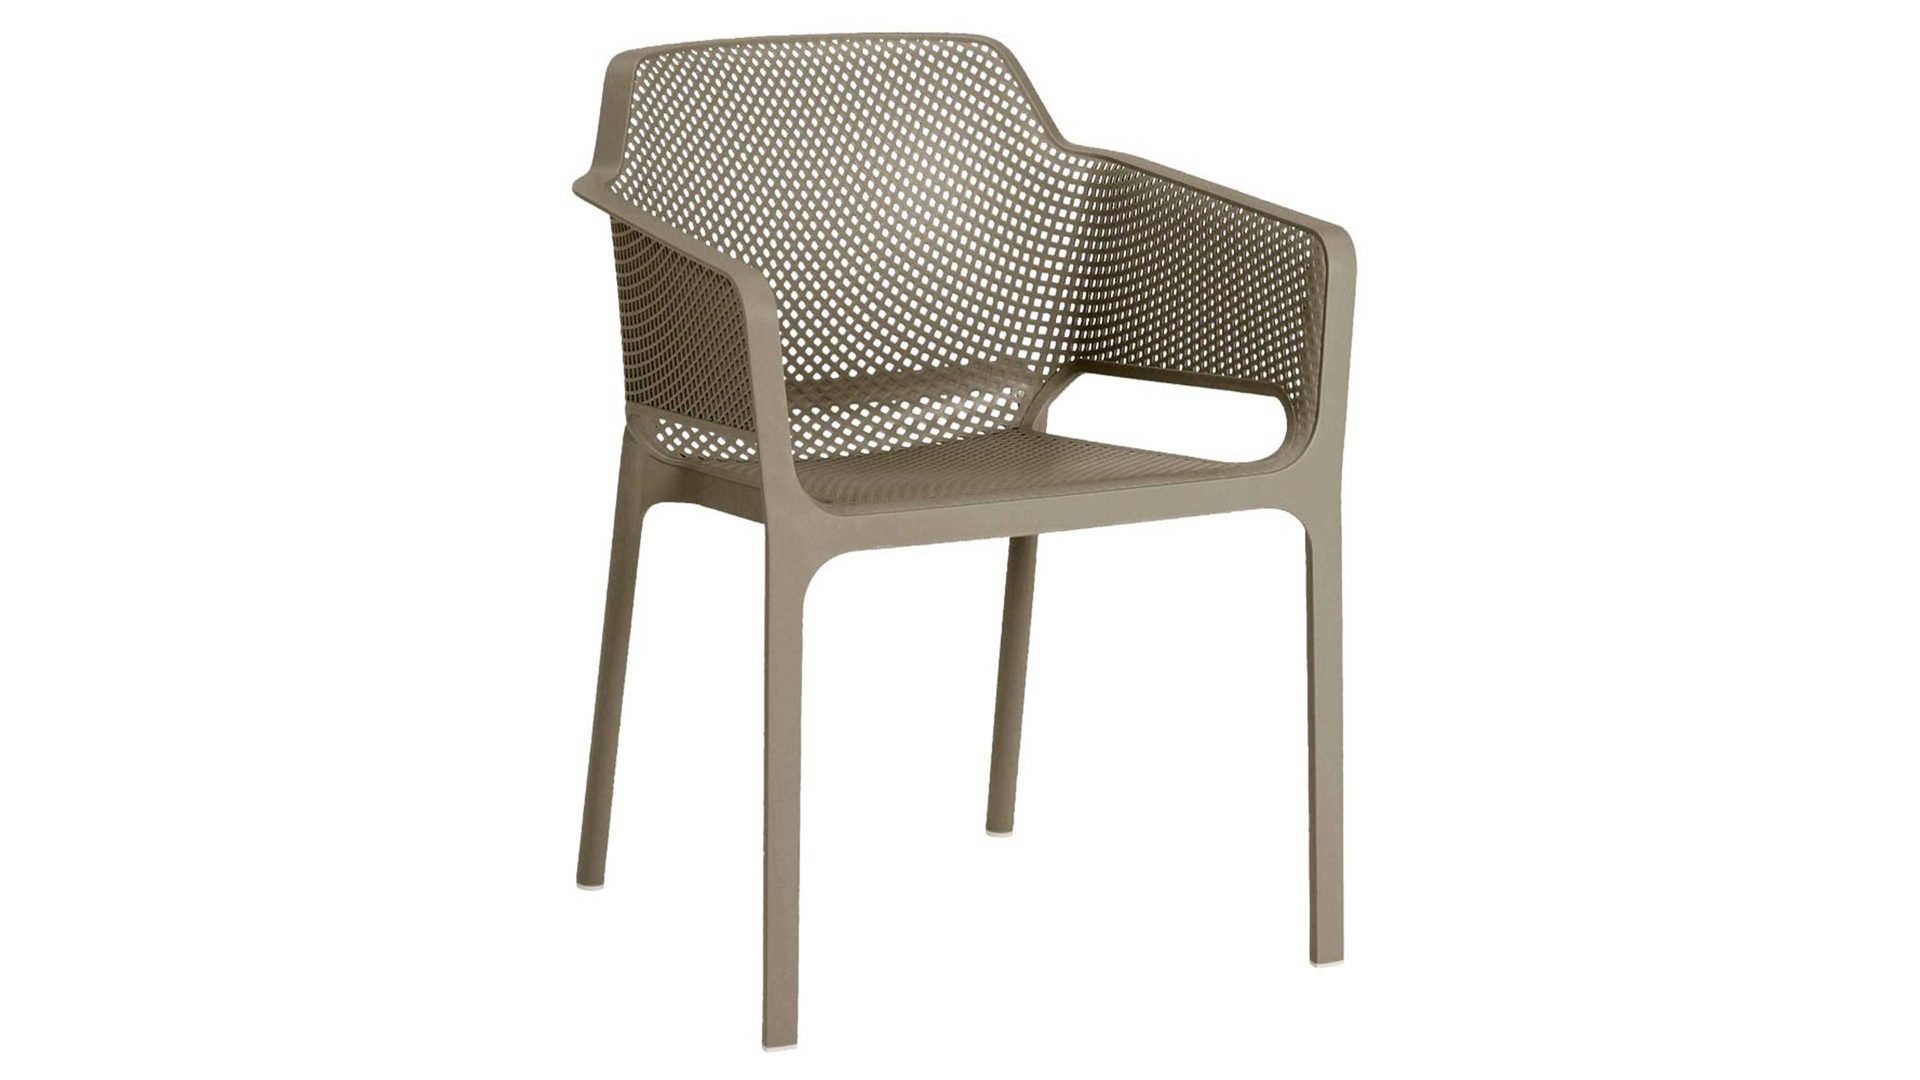 Gartenstuhl /-sessel Best freizeitmöbel aus Kunststoff in Grau BEST FREIZEITMÖBEL Stapelsessel Ohio taupefarbener Fiberglas-Kunststoff